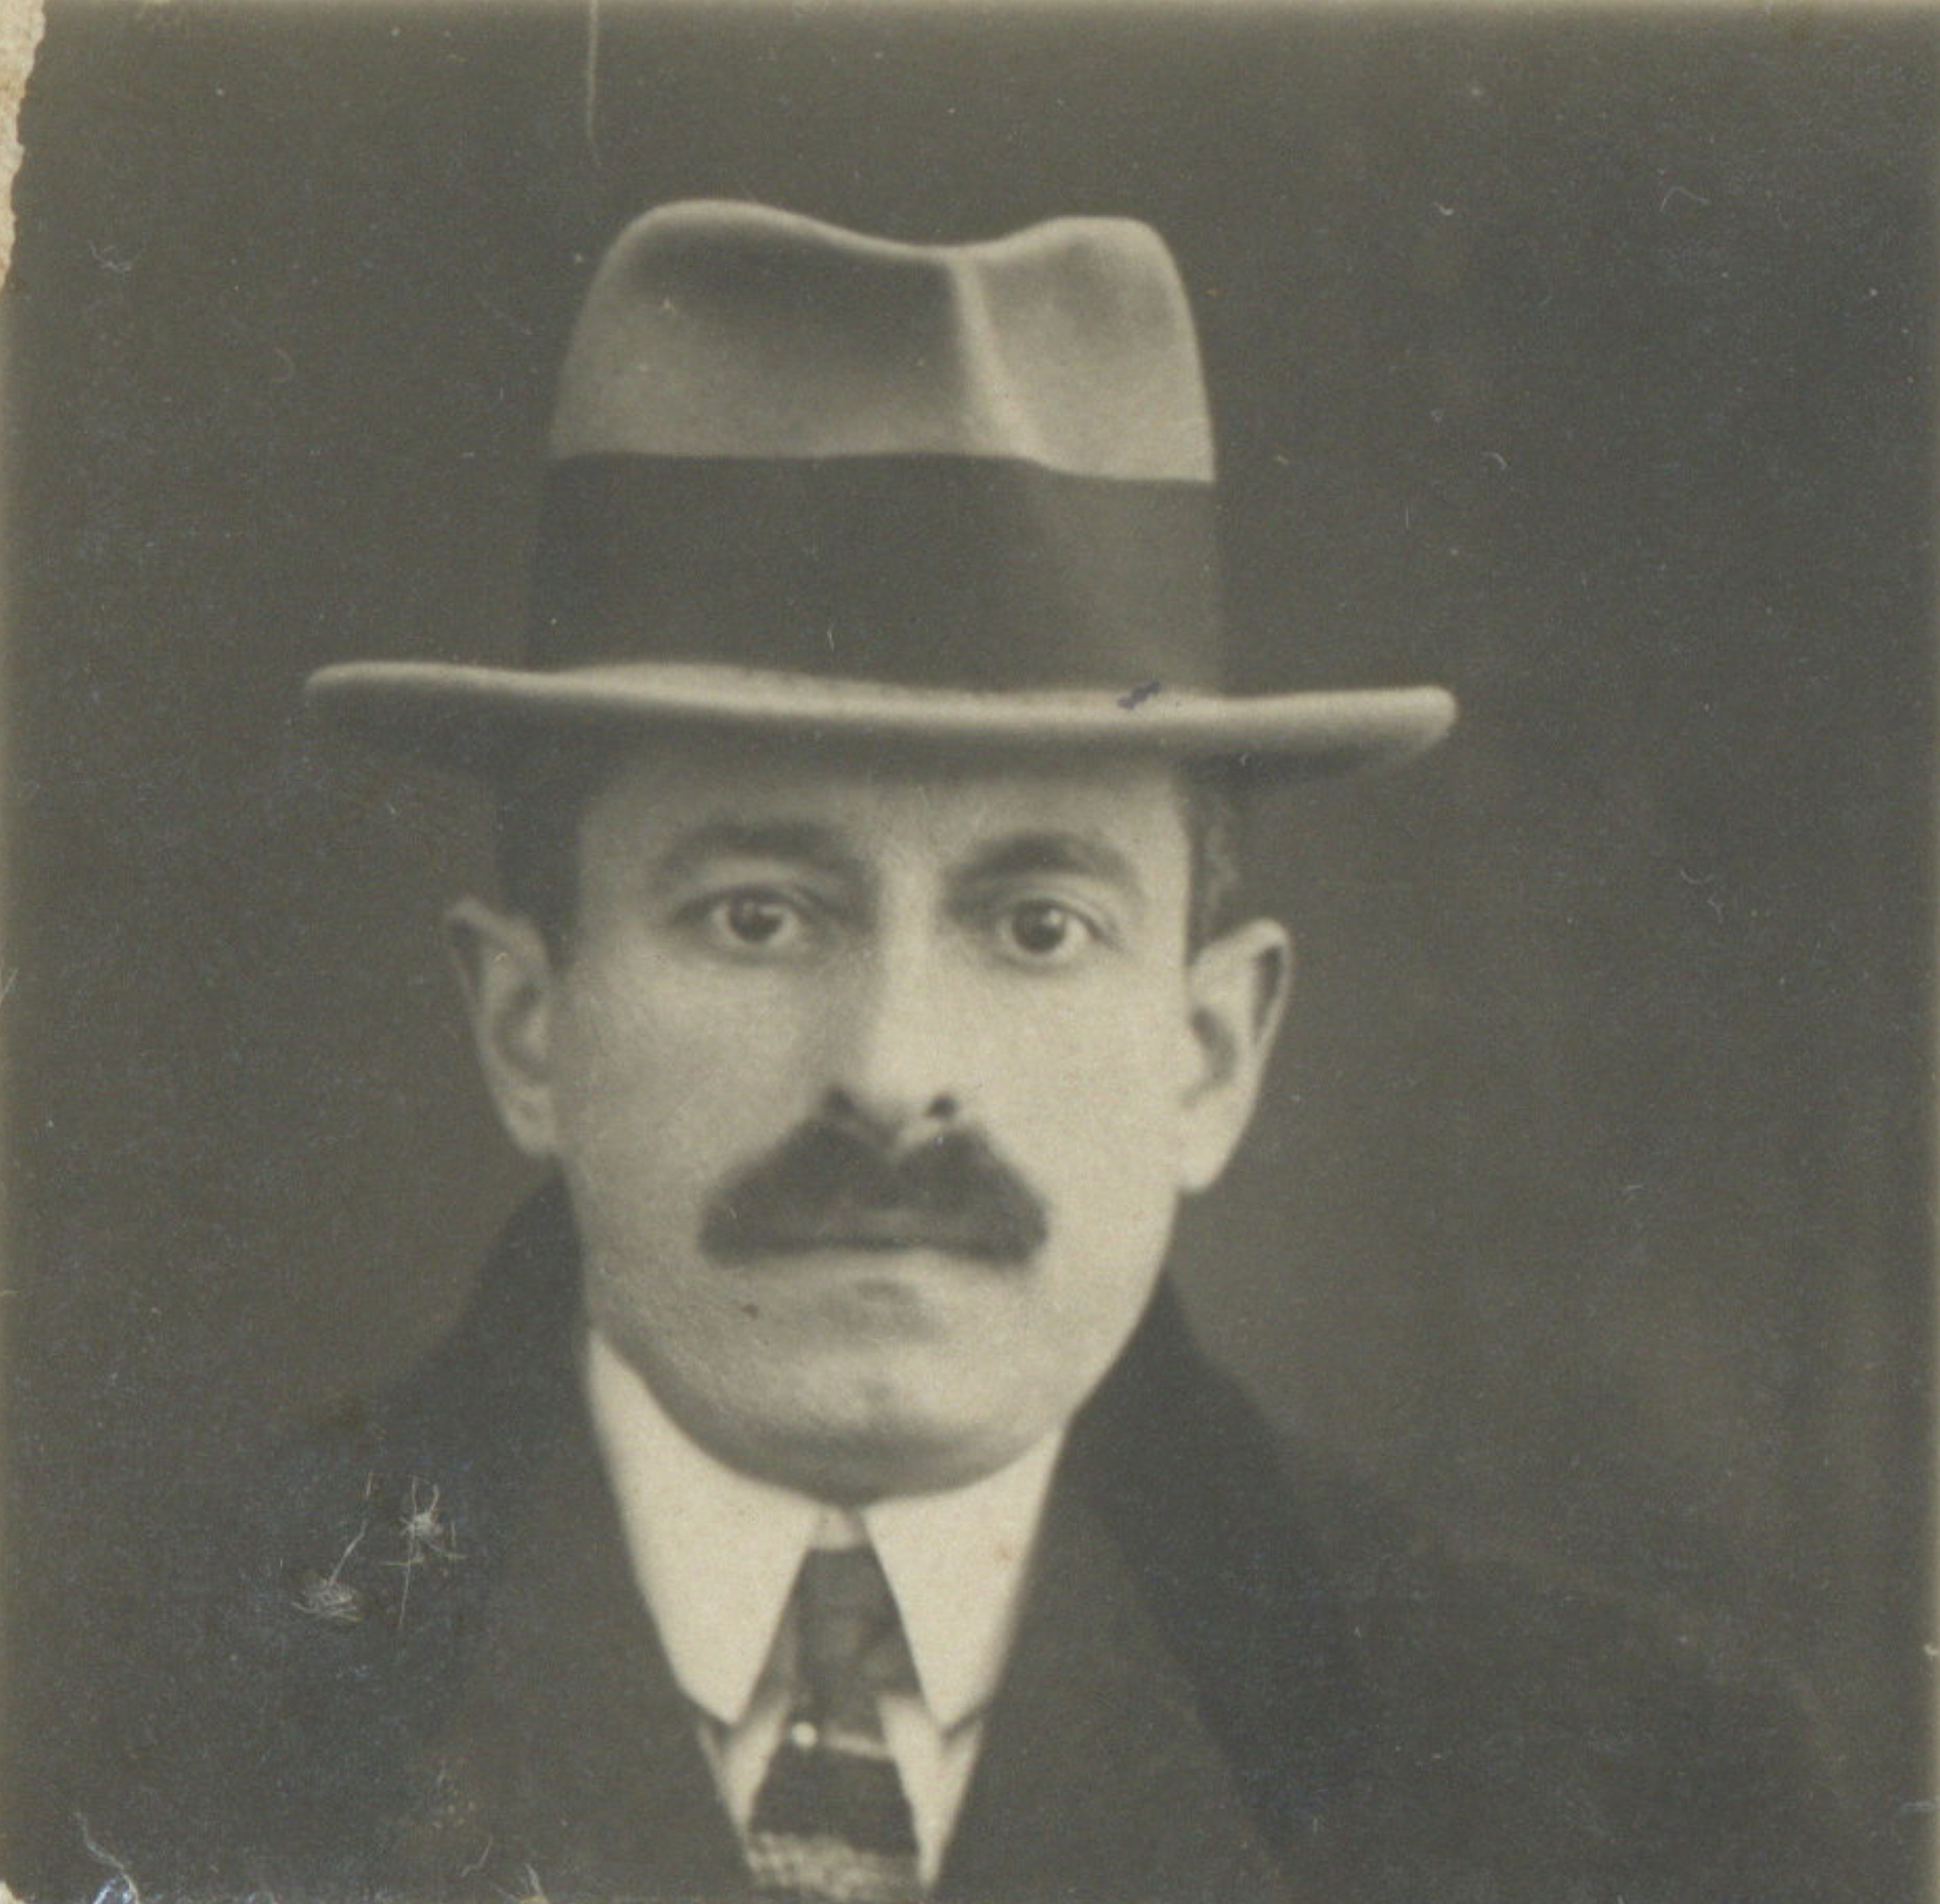 Salomon Kleerekoper in 1922. Vreemdelingendossier, Felix Archief Antwerpen, inventarisnummer 1120#295